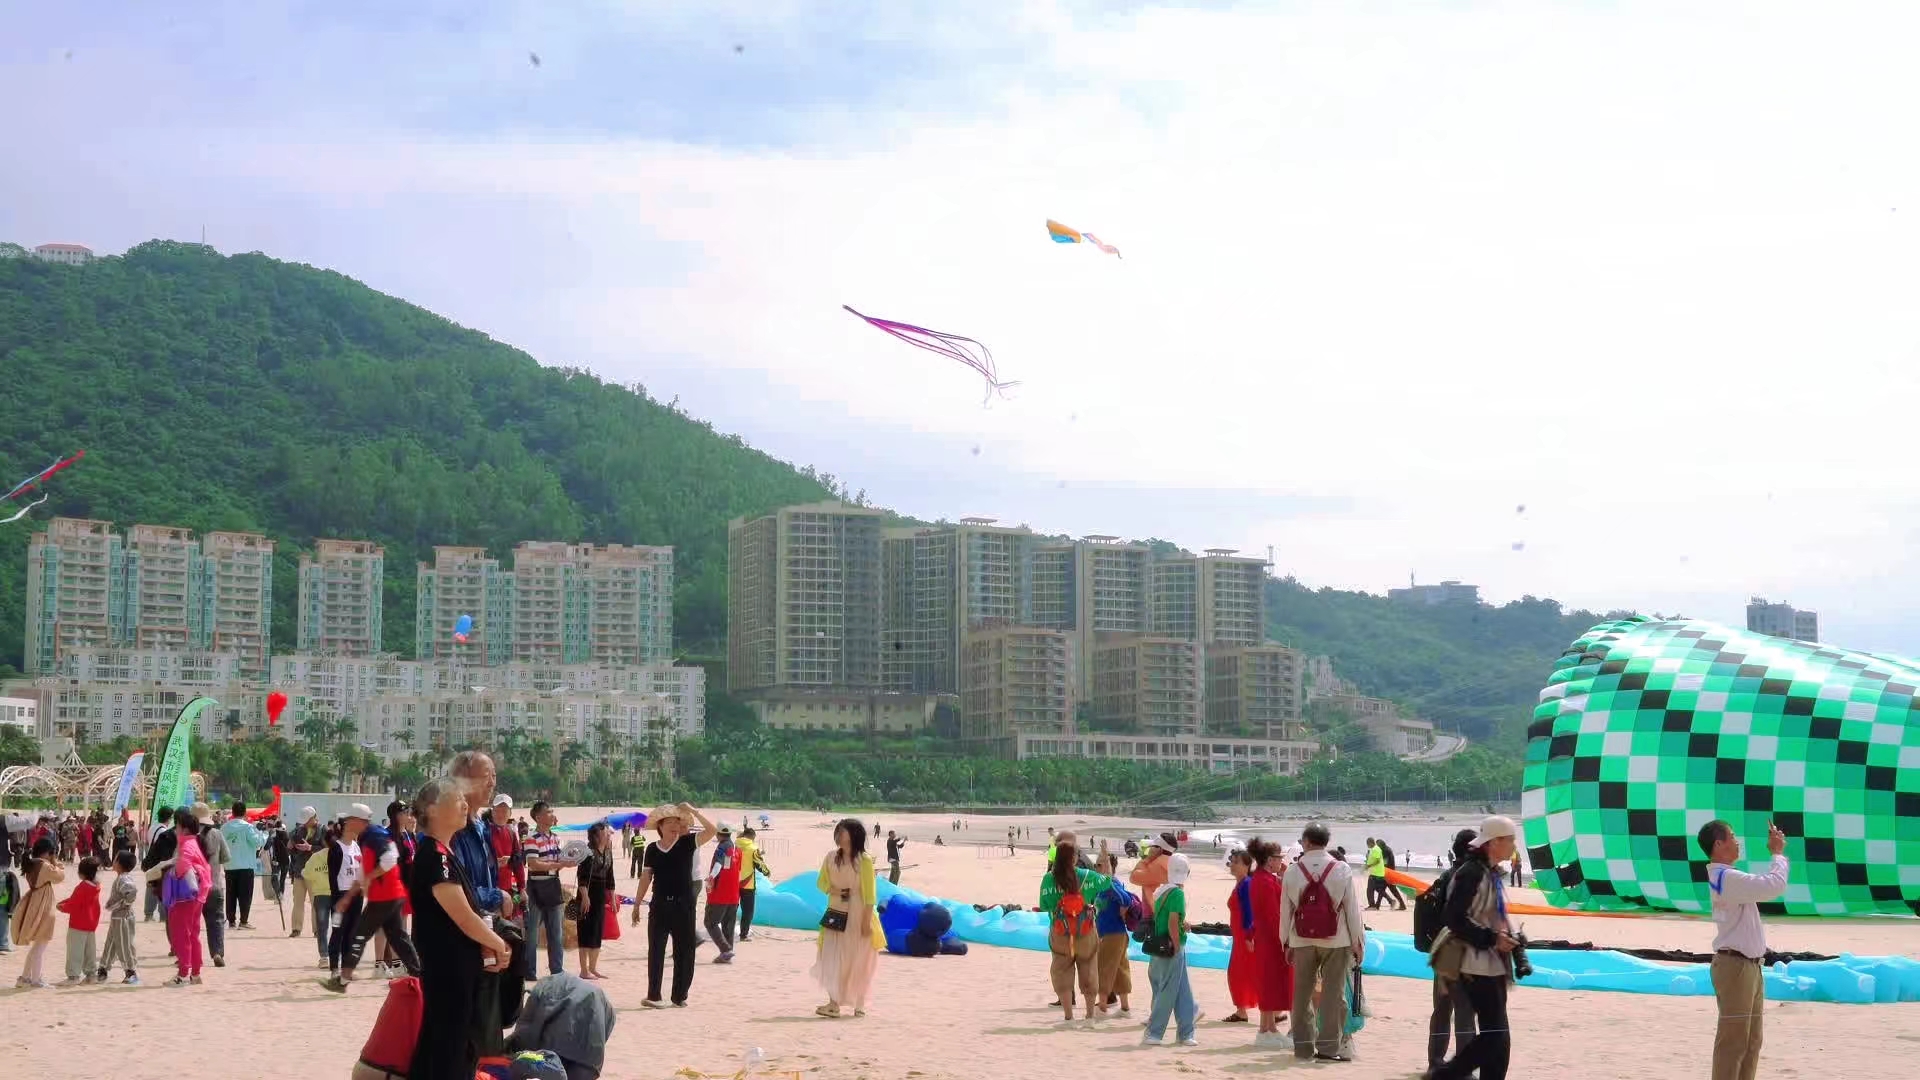 到场的市民群众，有几岁的幼童，也有两鬓斑白的老人，汇聚银滩共同体验放飞风筝的快乐。张杰摄